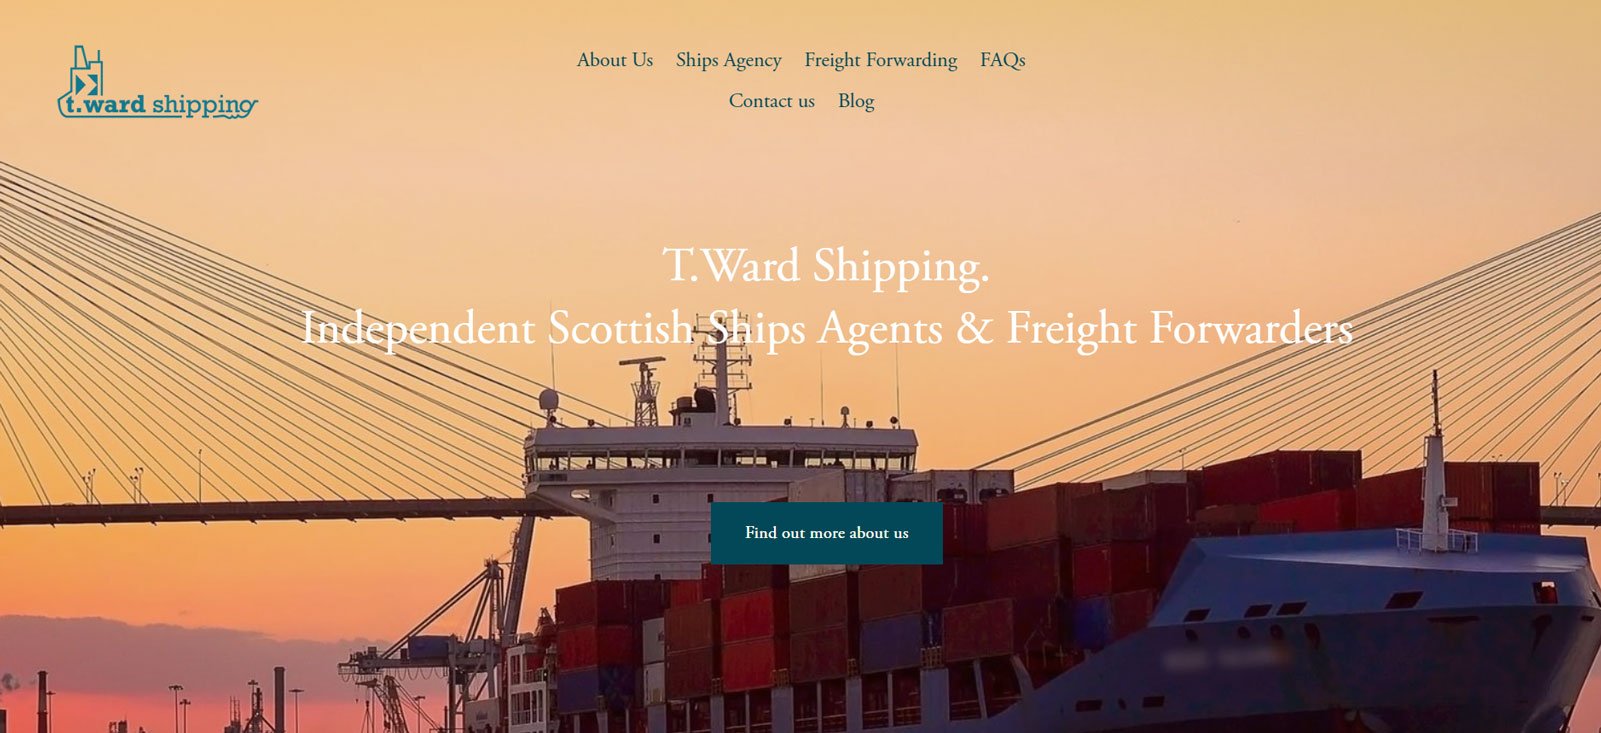 T.Ward Shipping